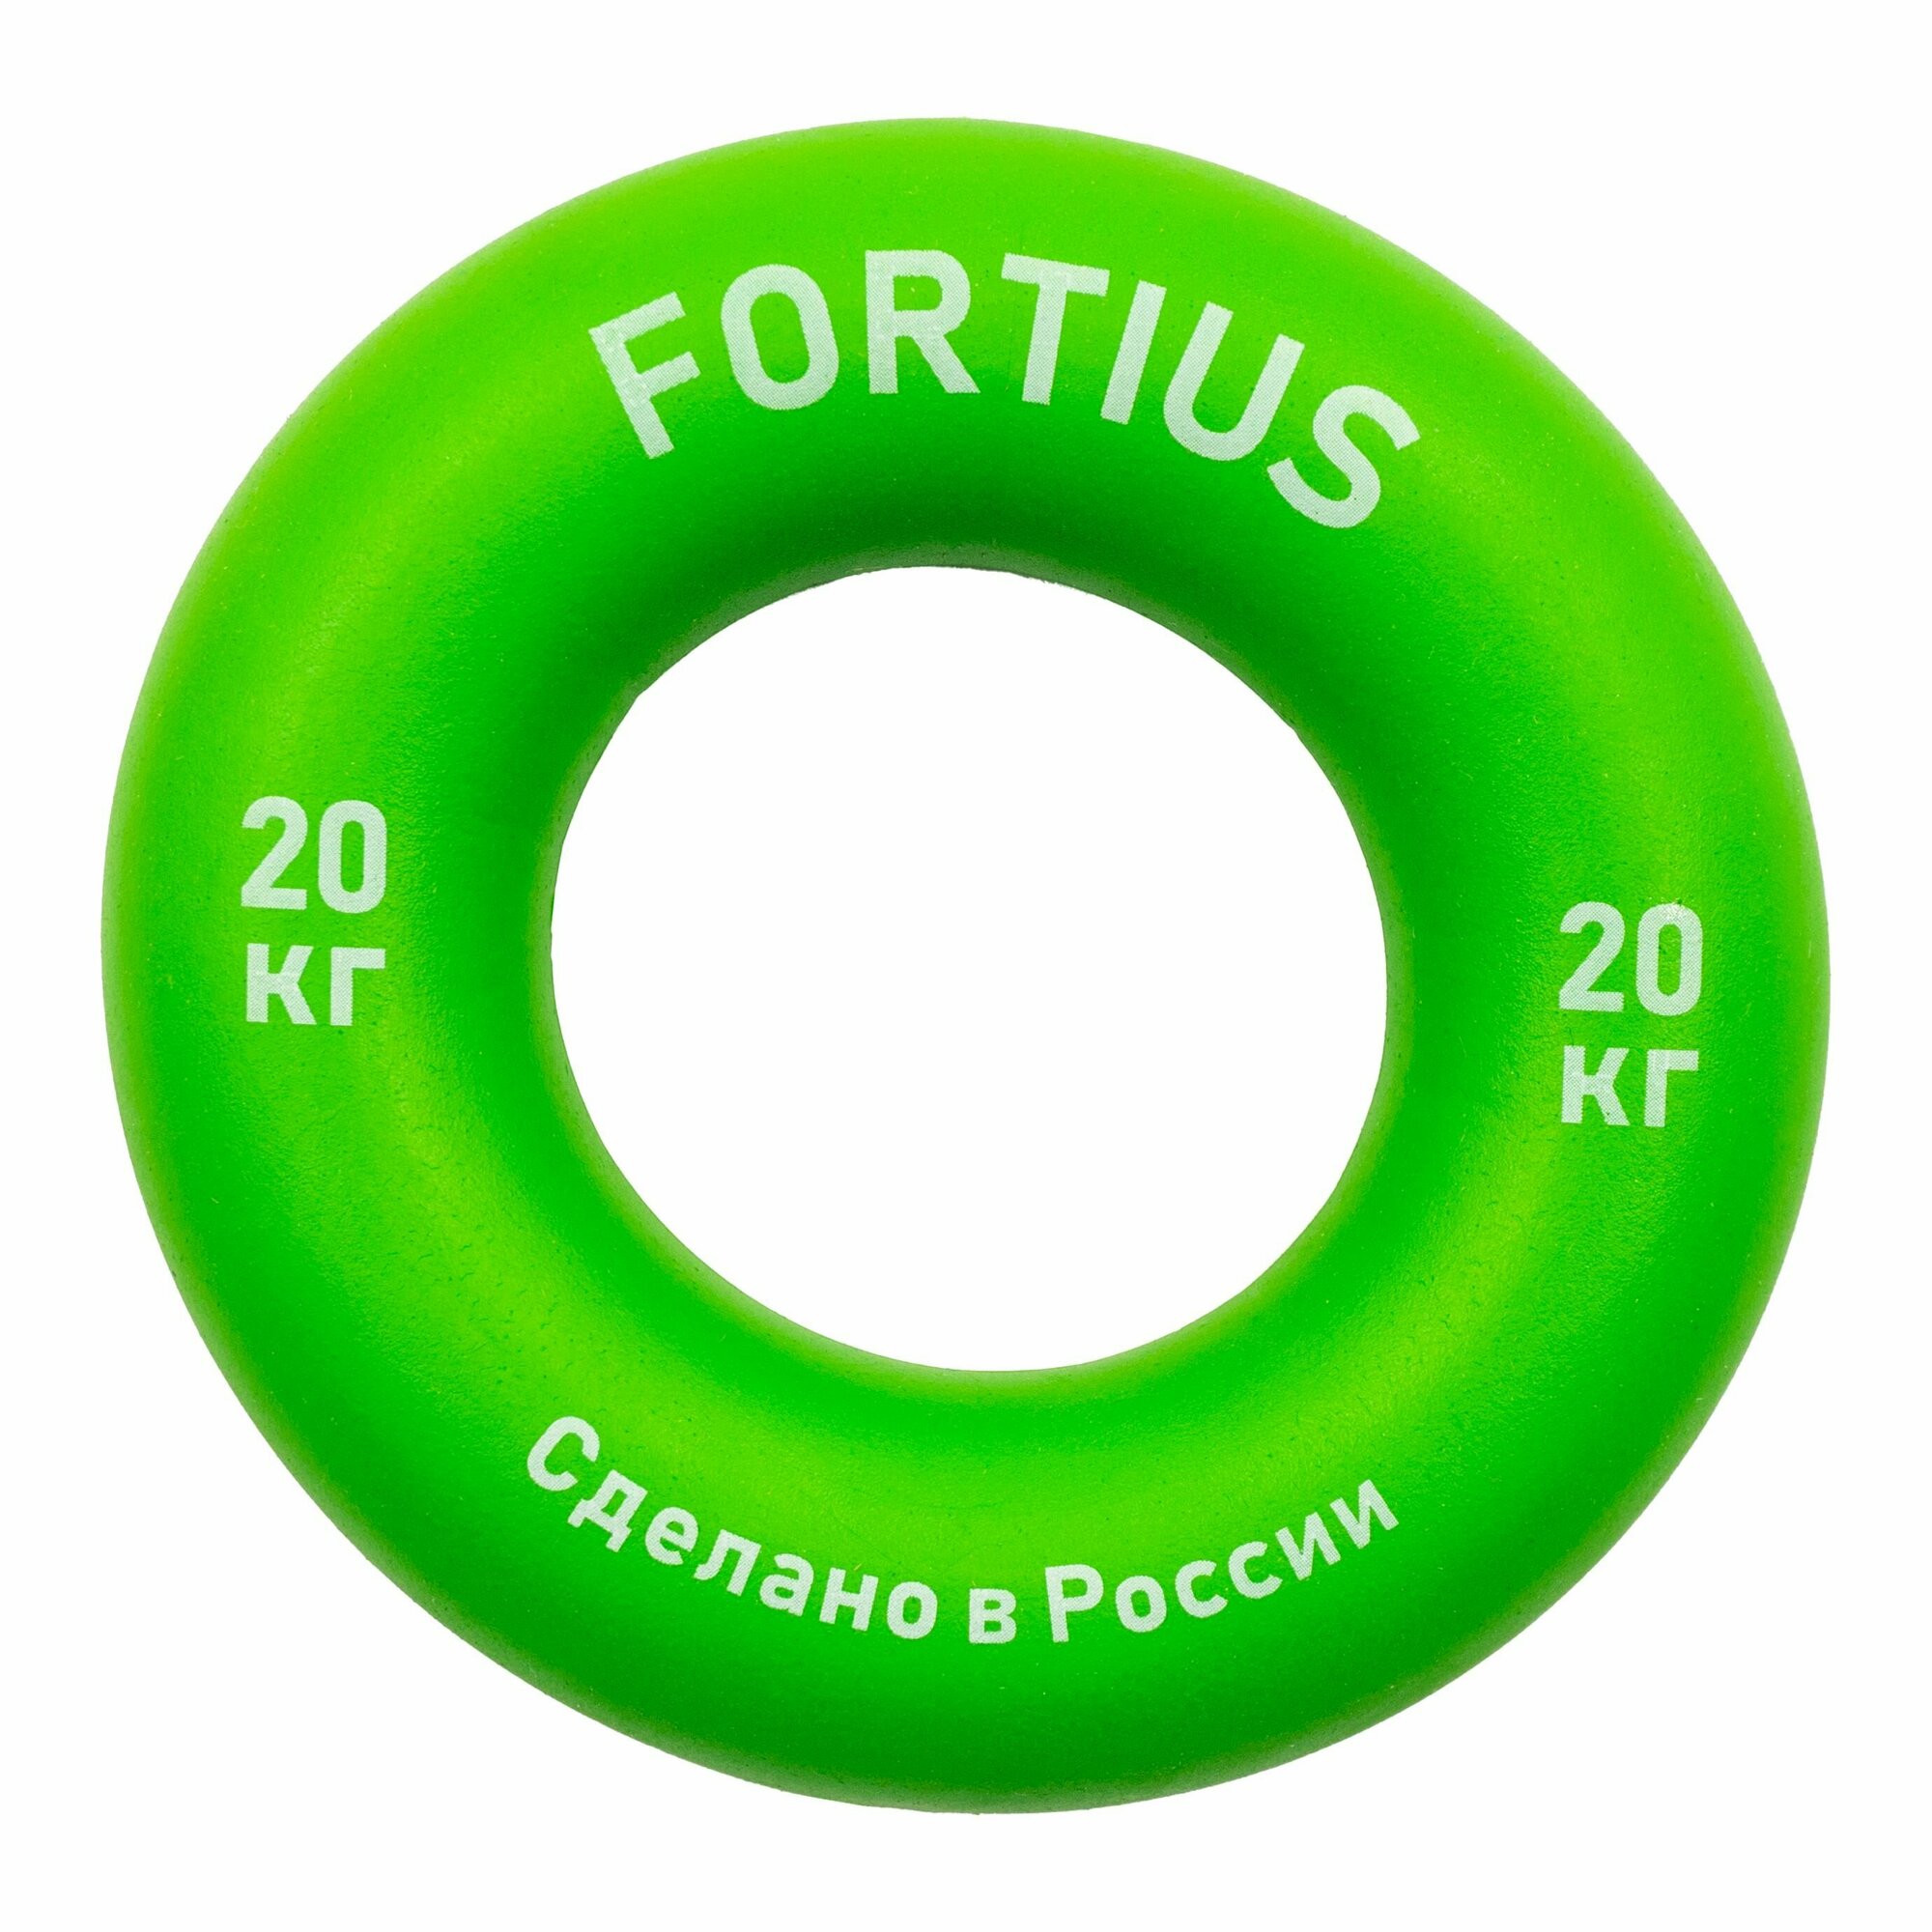 Набор кистевых эспандеров "Fortius", 3 шт. (20,30,40 кг) (подложка)